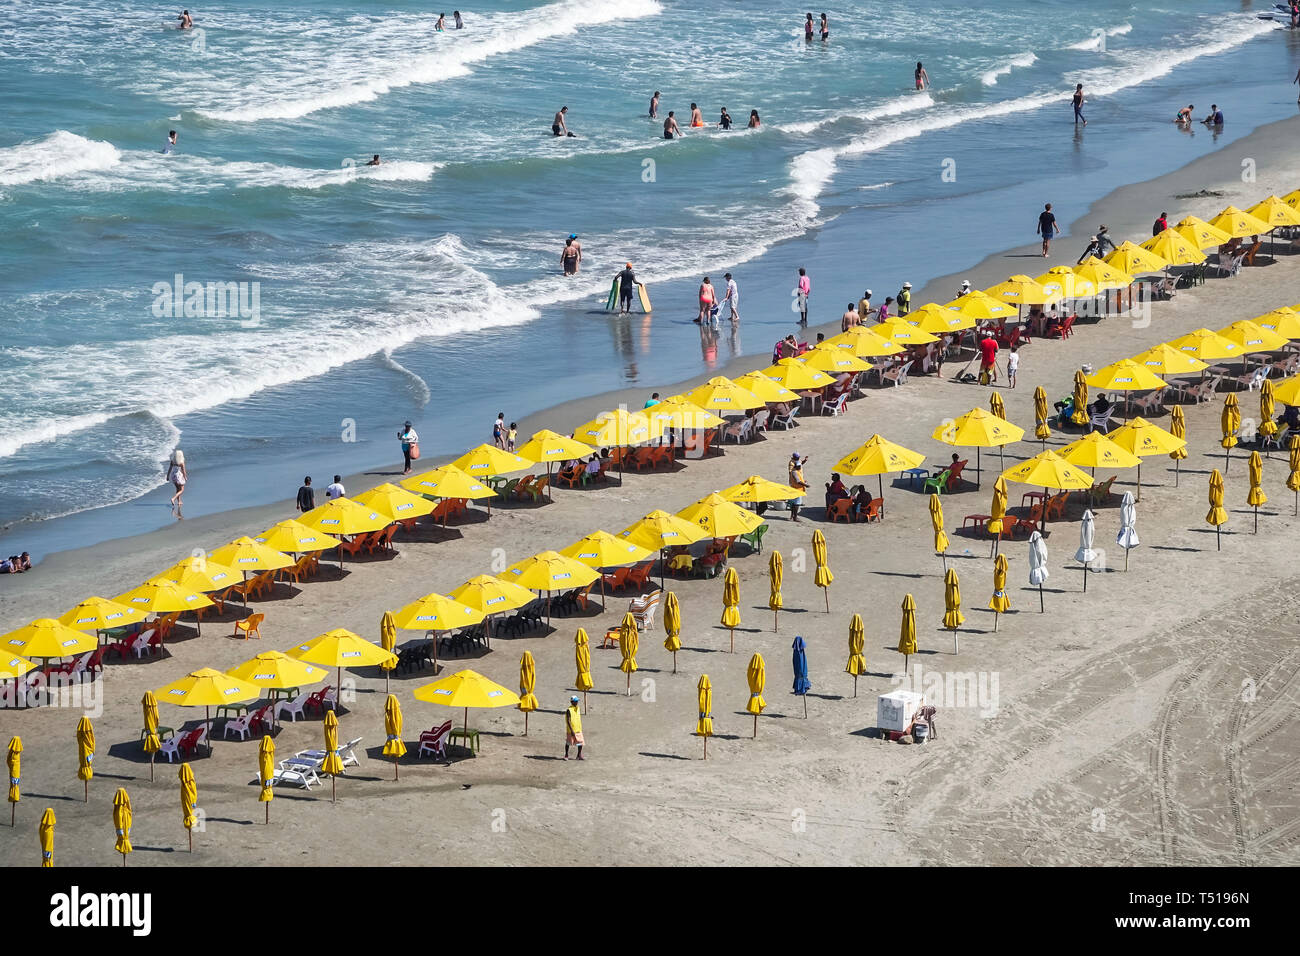 Cartagena Kolumbien, Bocagrande, öffentlicher Strand im Karibischen Meer, Sandwasser, Regenschirme, Verleih von gelben Sonnenschirmen, Einwohner von Hispanic, Wellen, unbesetzt, überfüllt Stockfoto